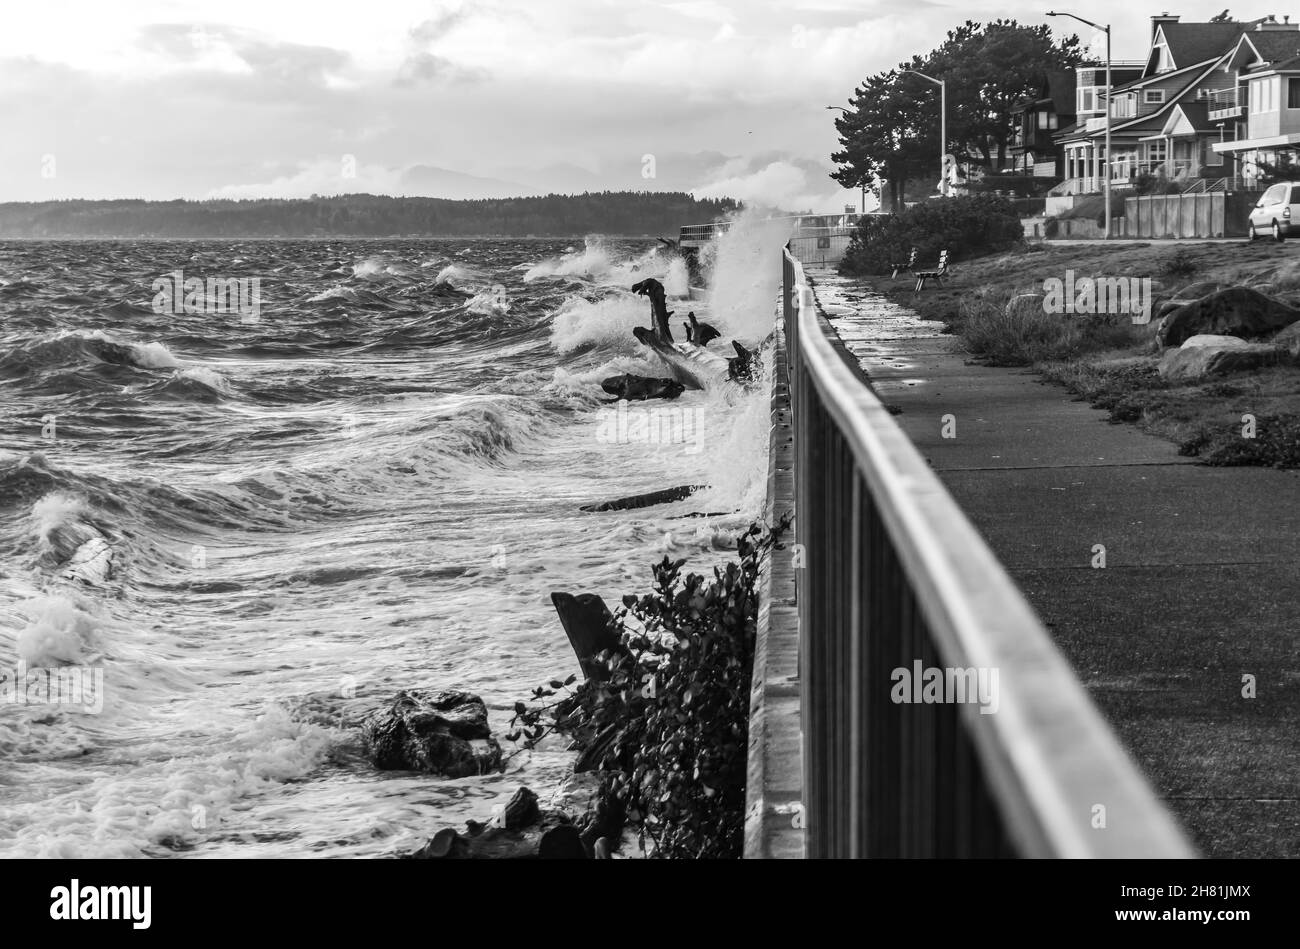 Las olas chocan contra la costa en el oeste de Seattle, Washington, en un día tormentoso. Foto de stock